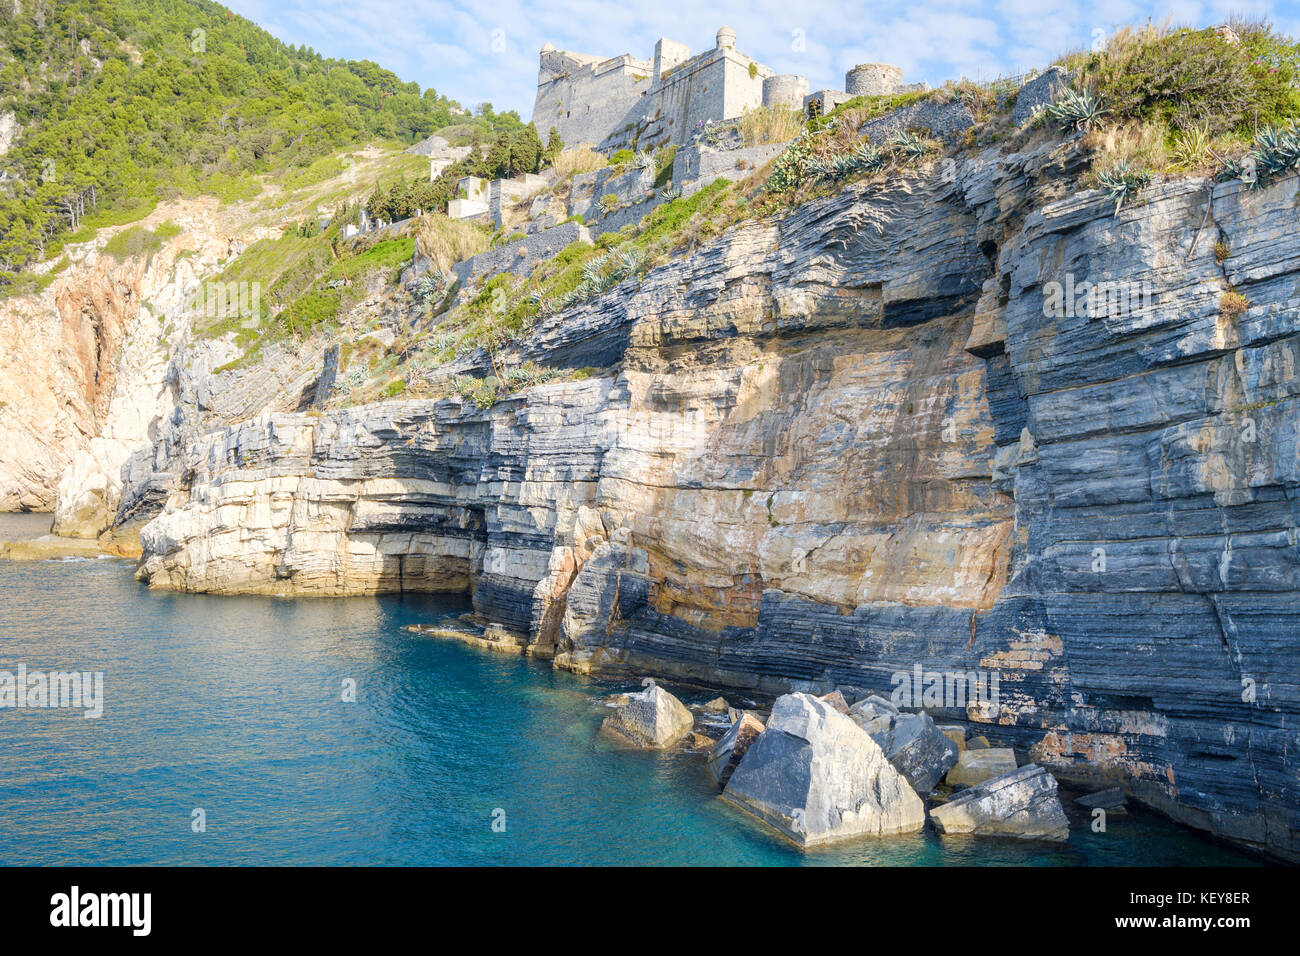 Cliffs at Porto Venere with the view up to the Castle Doria, Porto Venere, Liguria, Italy Stock Photo